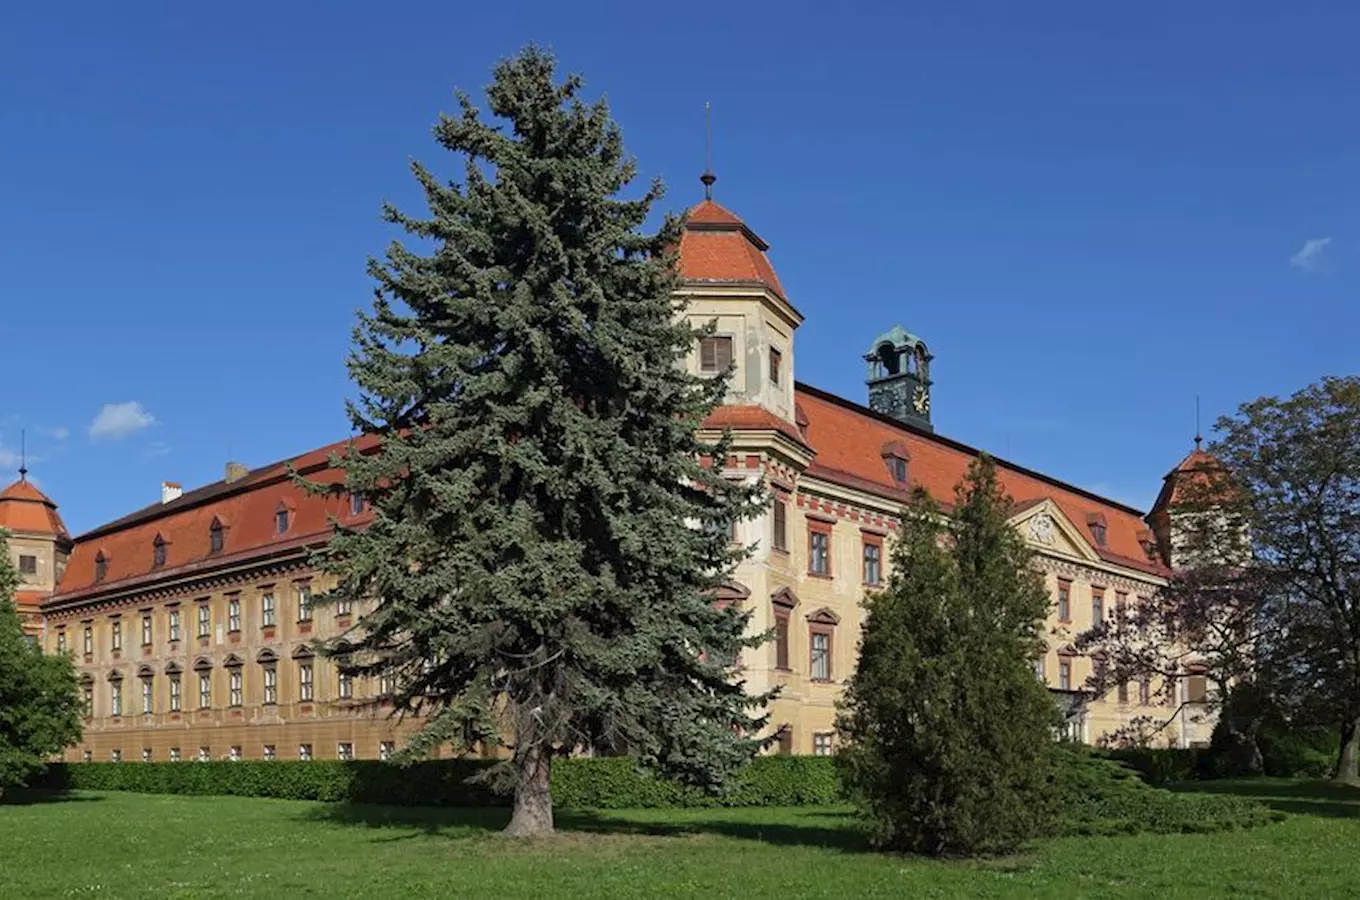 Po stopách české historie se vydejte do zahrady zámku v Holešově